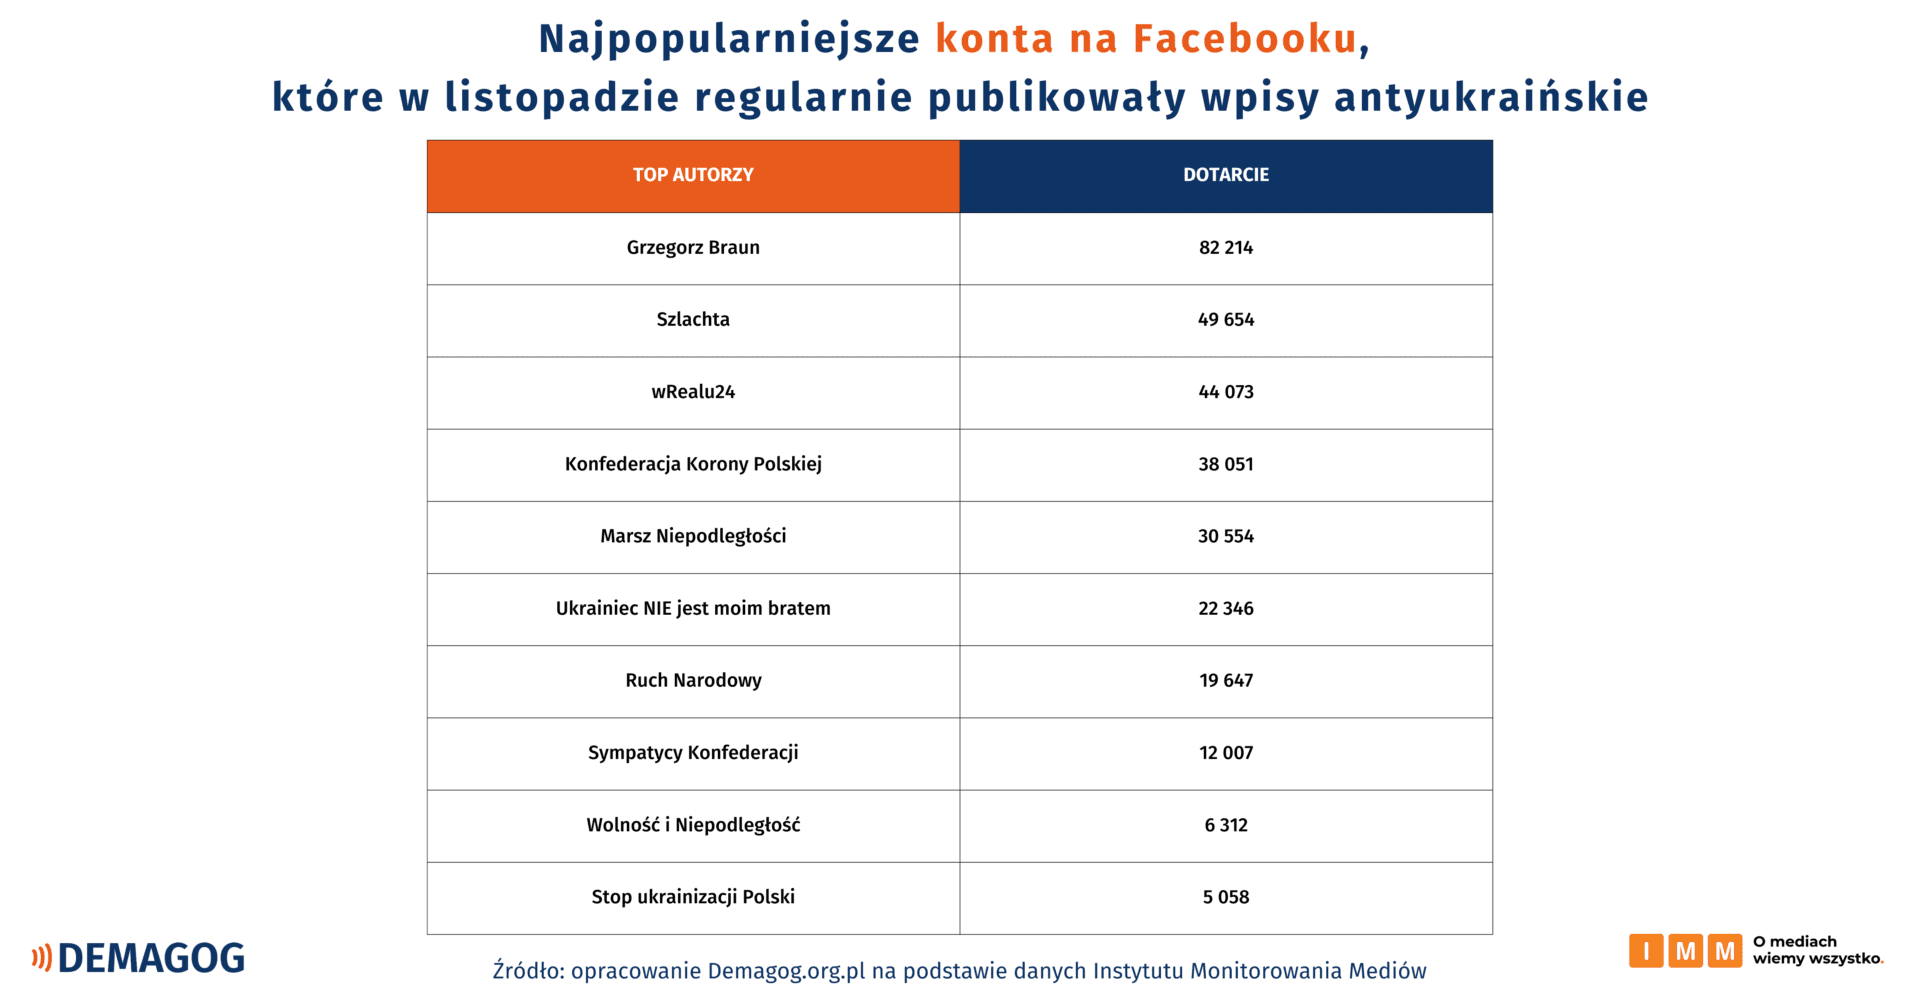 TOP 10 kont na Facebooku powielających antyukraińską propagandę w listopadzie